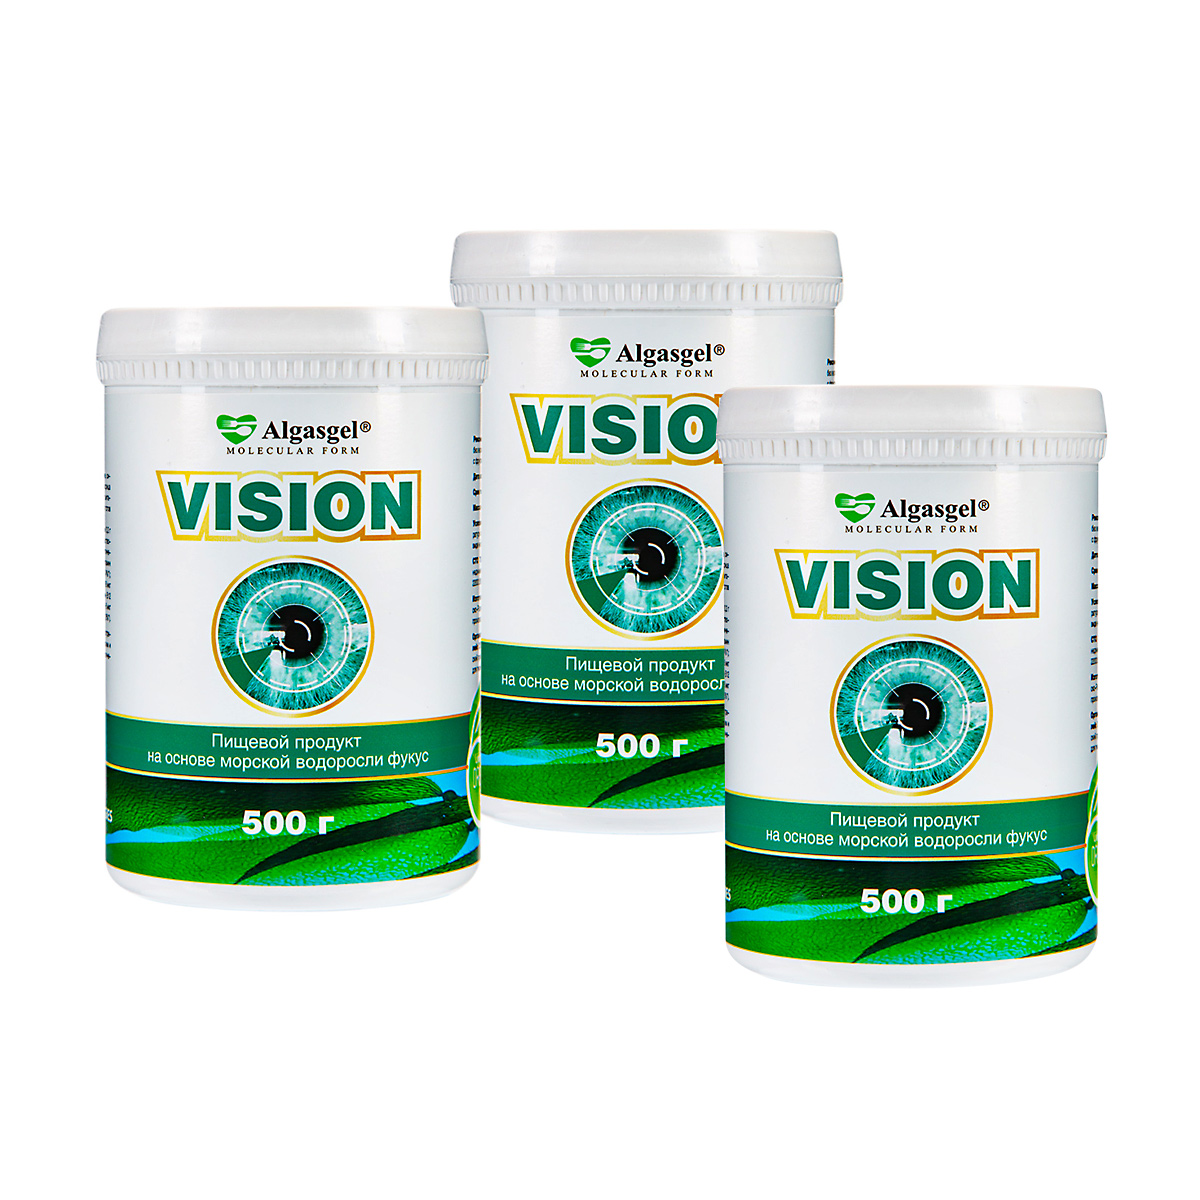 algasgel superfit для здорового похудения 500 г Algasgel Vision для здоровья глаз (2 уп. по 500 г + 1 в подарок)